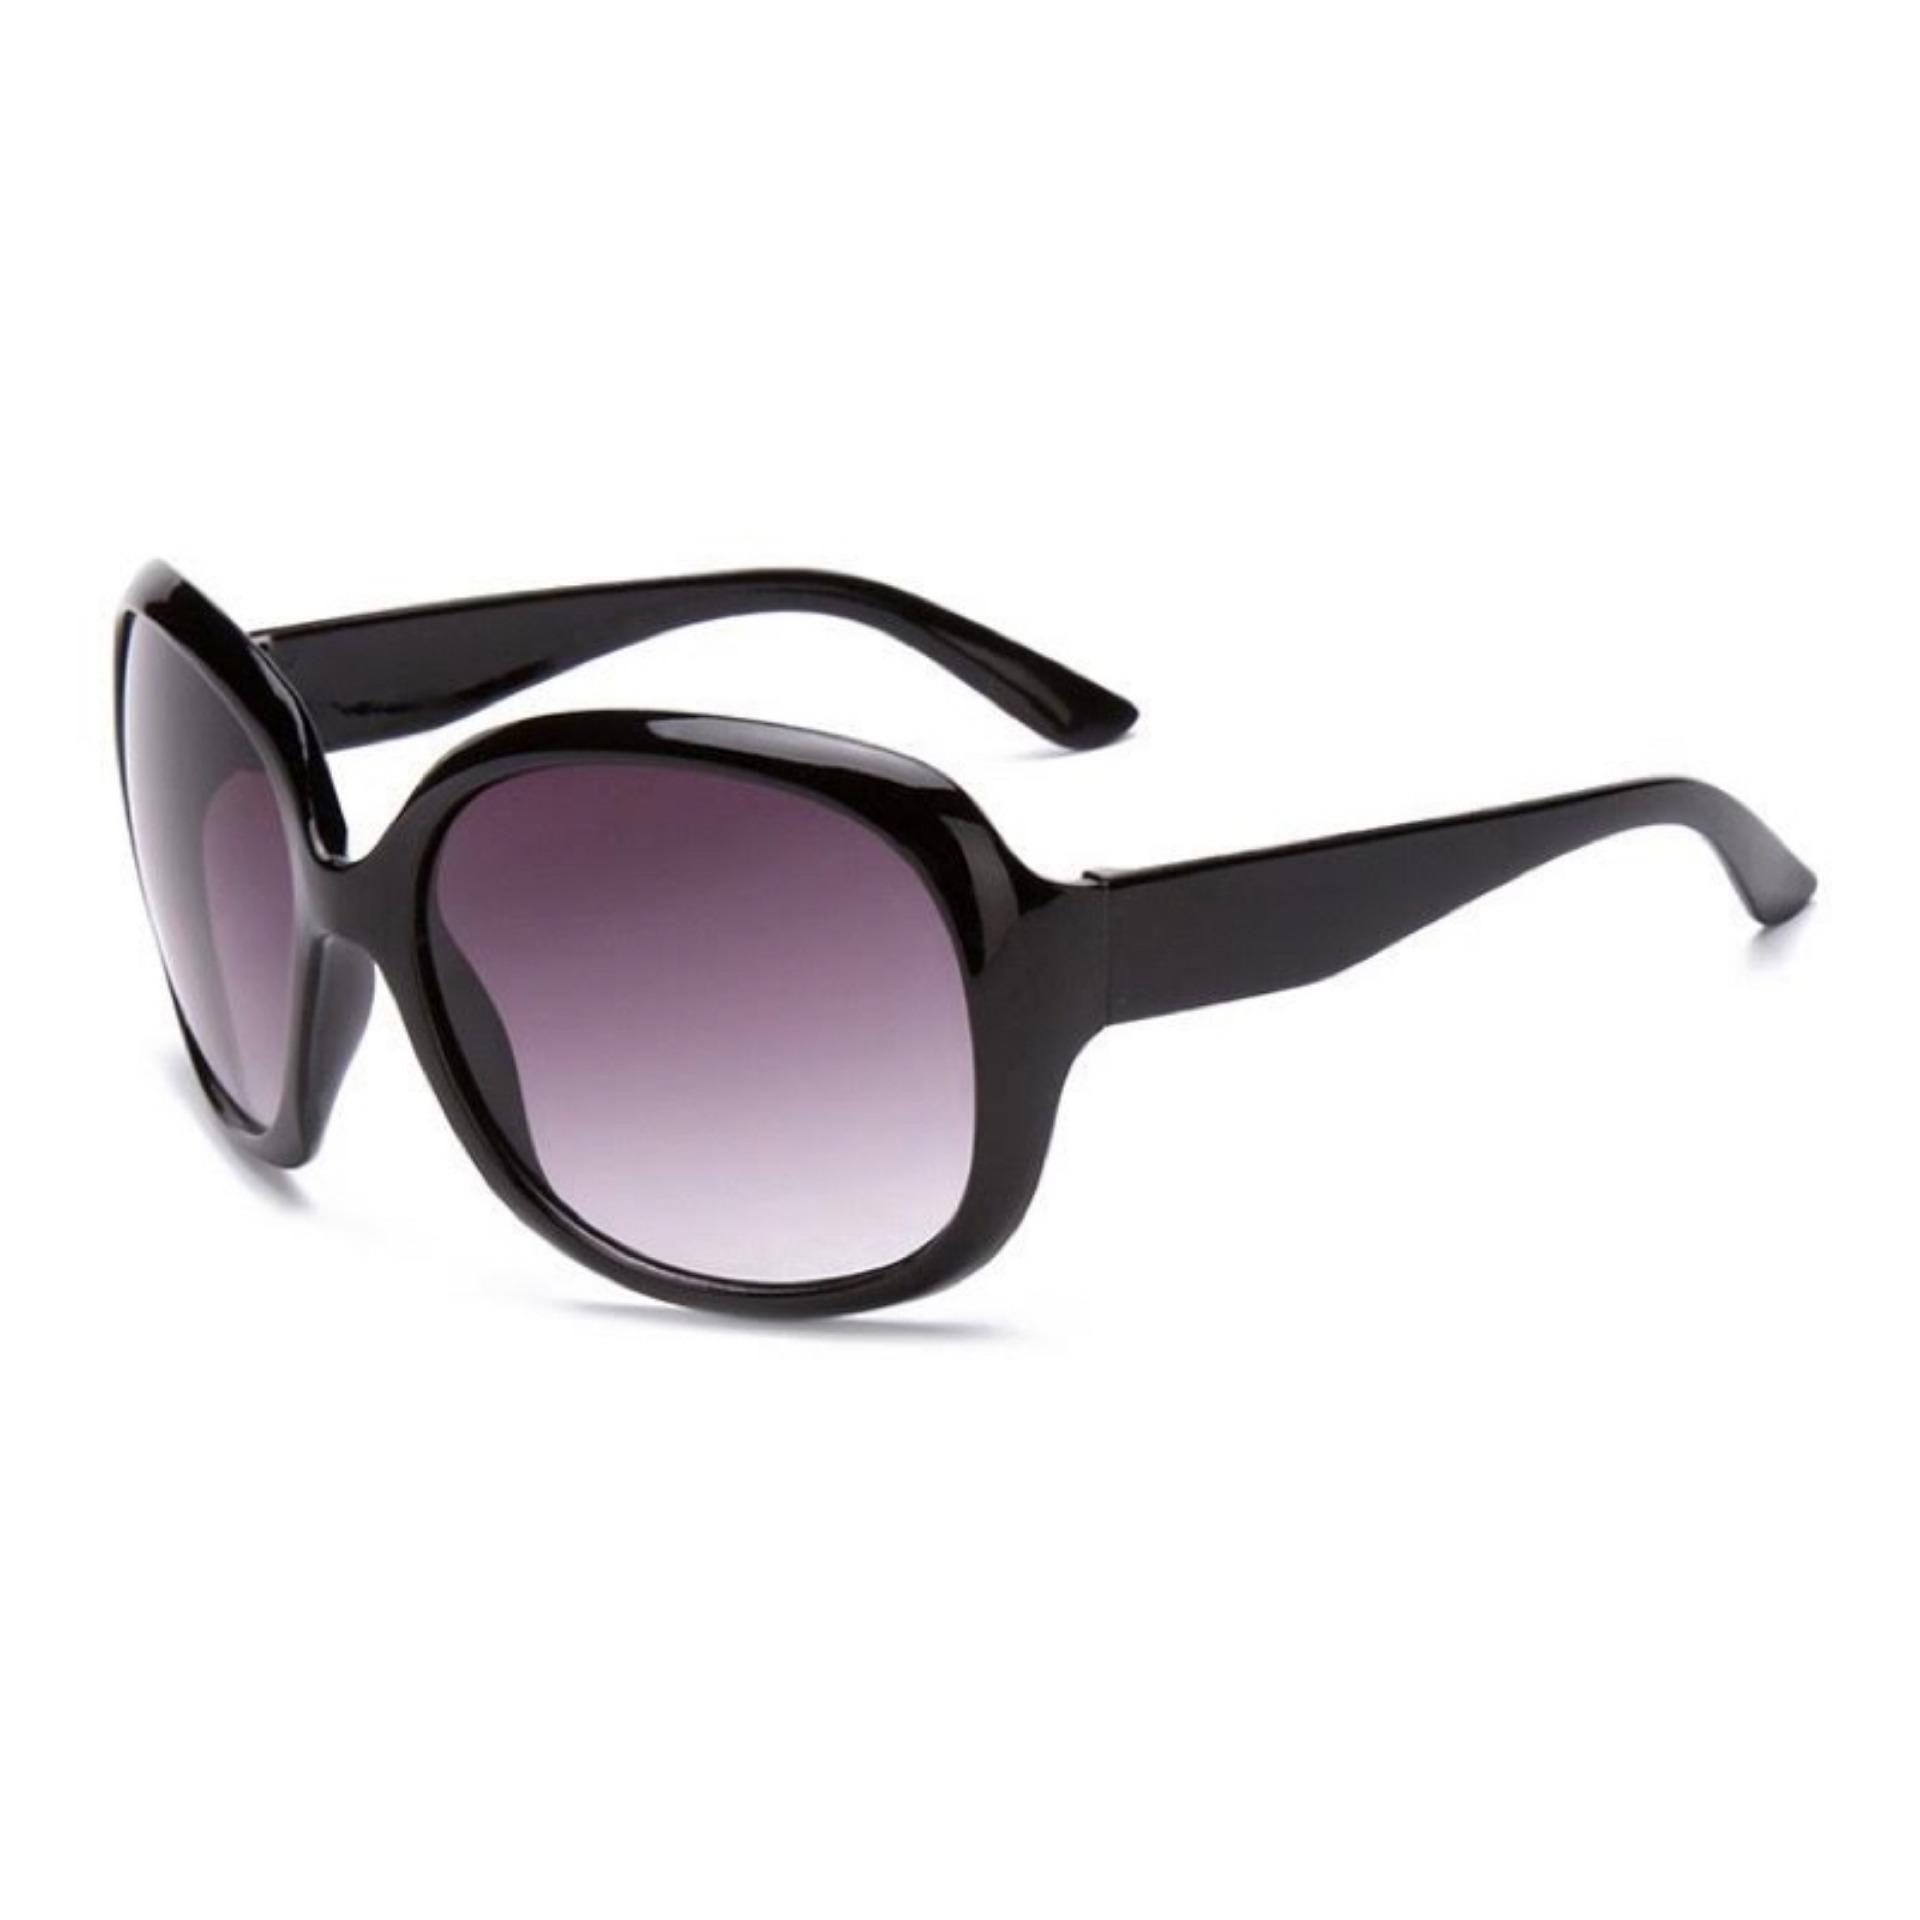 Cat Eye Retro Sunglasses Kacamata Wanita Hitam Chf 008 